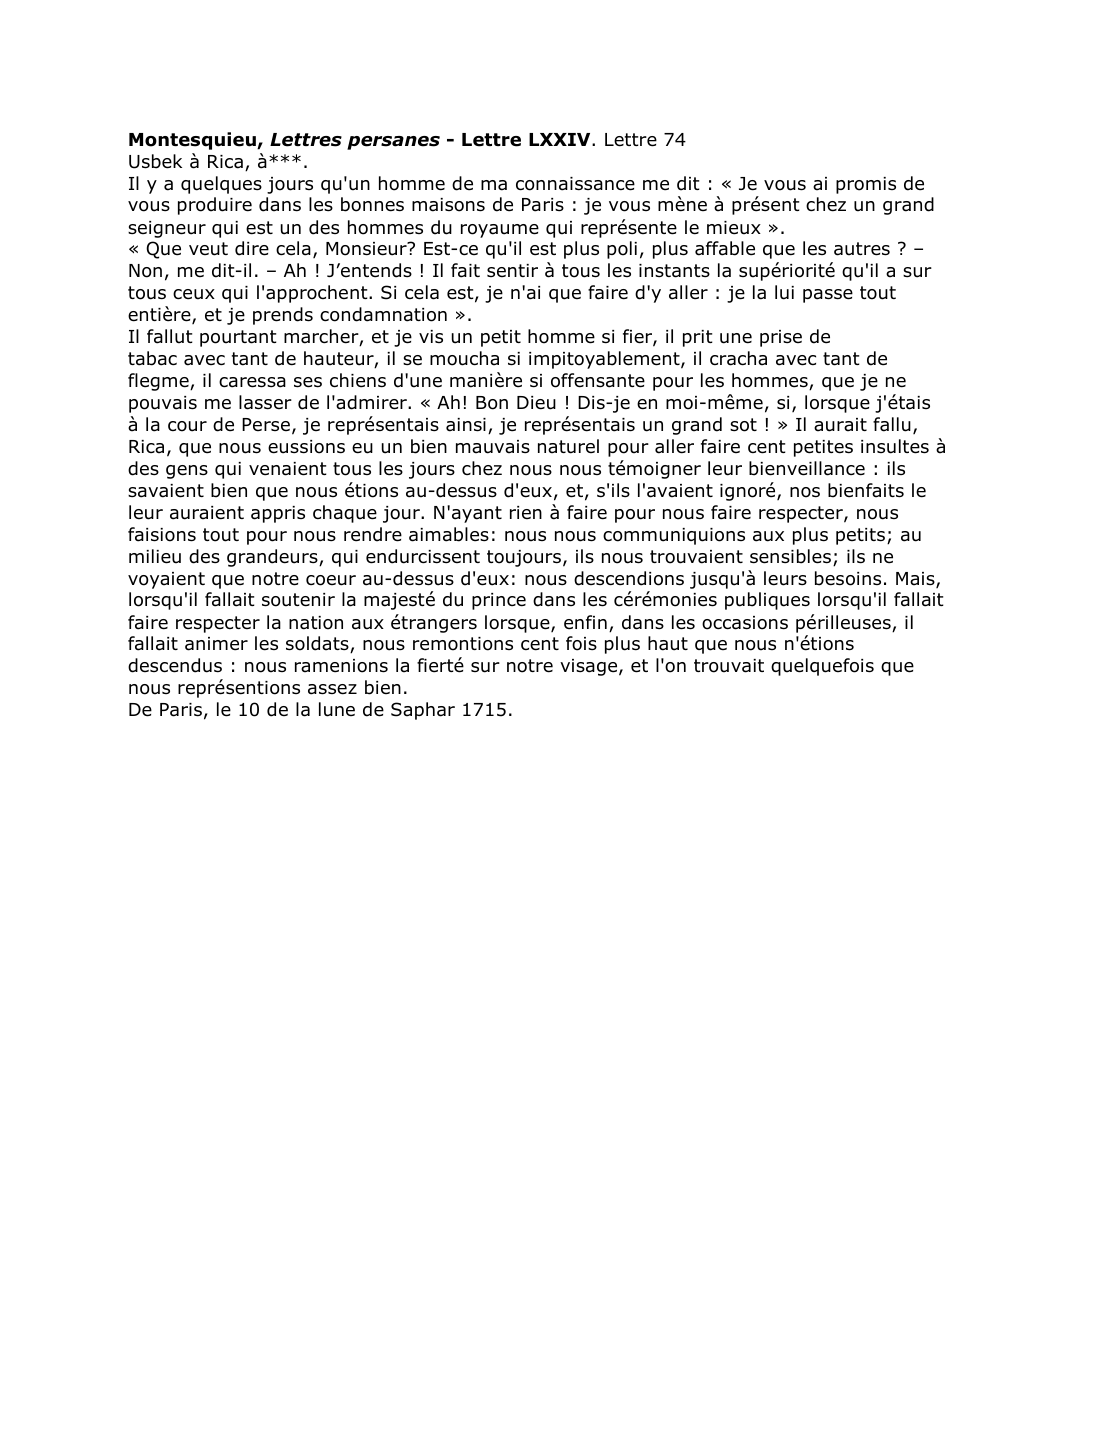 Prévisualisation du document Montesquieu, Lettres persanes - Lettre LXXIV. Lettre 74. Commentaire